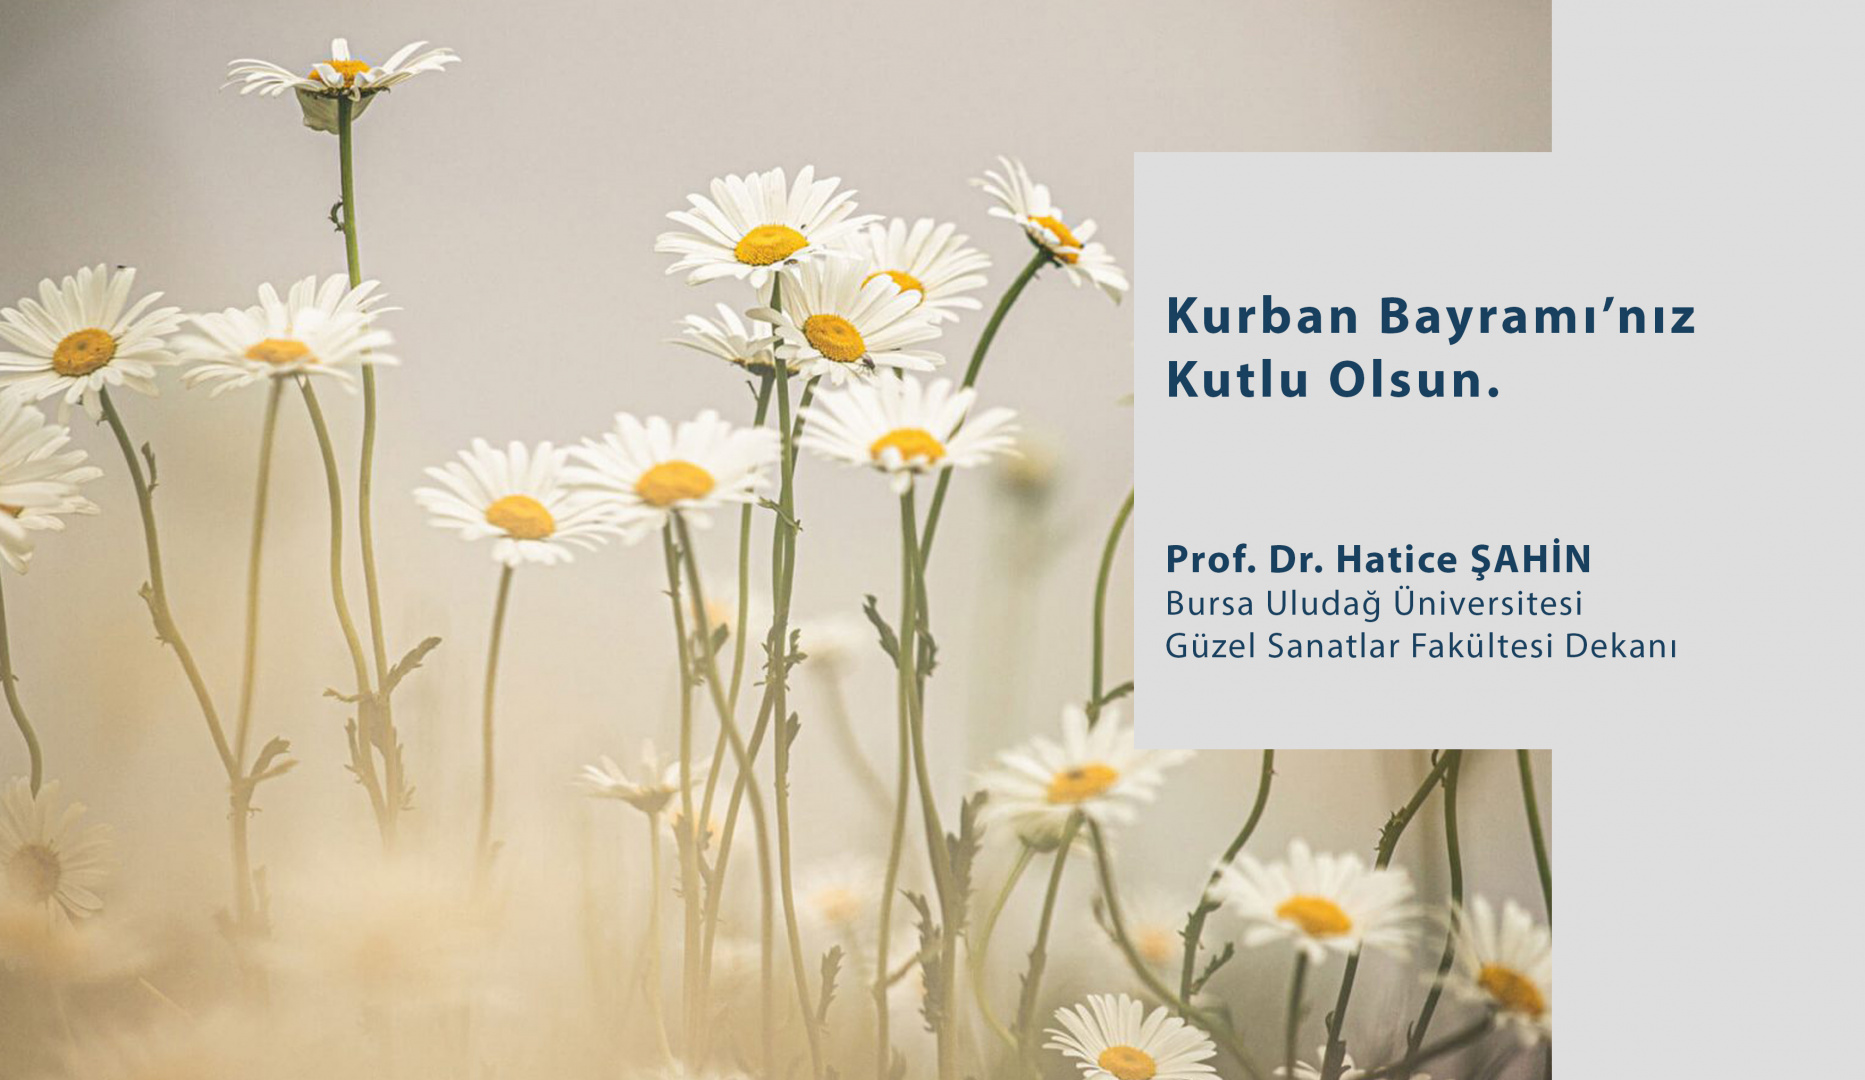  Dekanımız Sn. Prof. Dr. Hatice ŞAHİN'in Kurban Bayramı Mesajı  